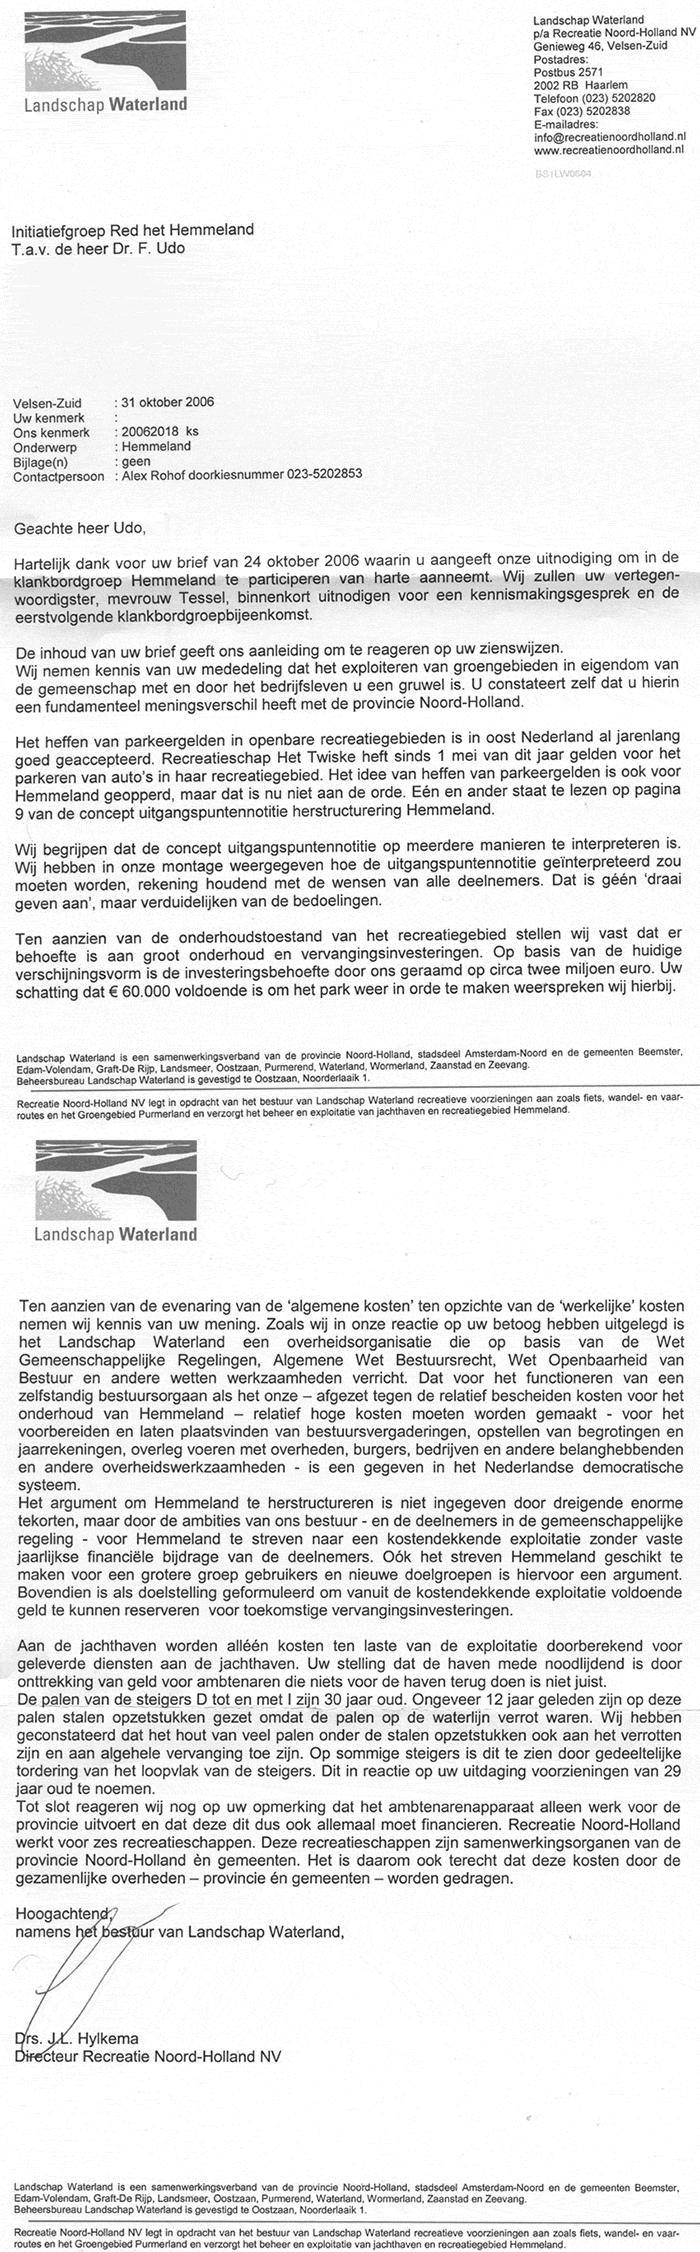 Brief van Landschap Waterland 19 okt 2006